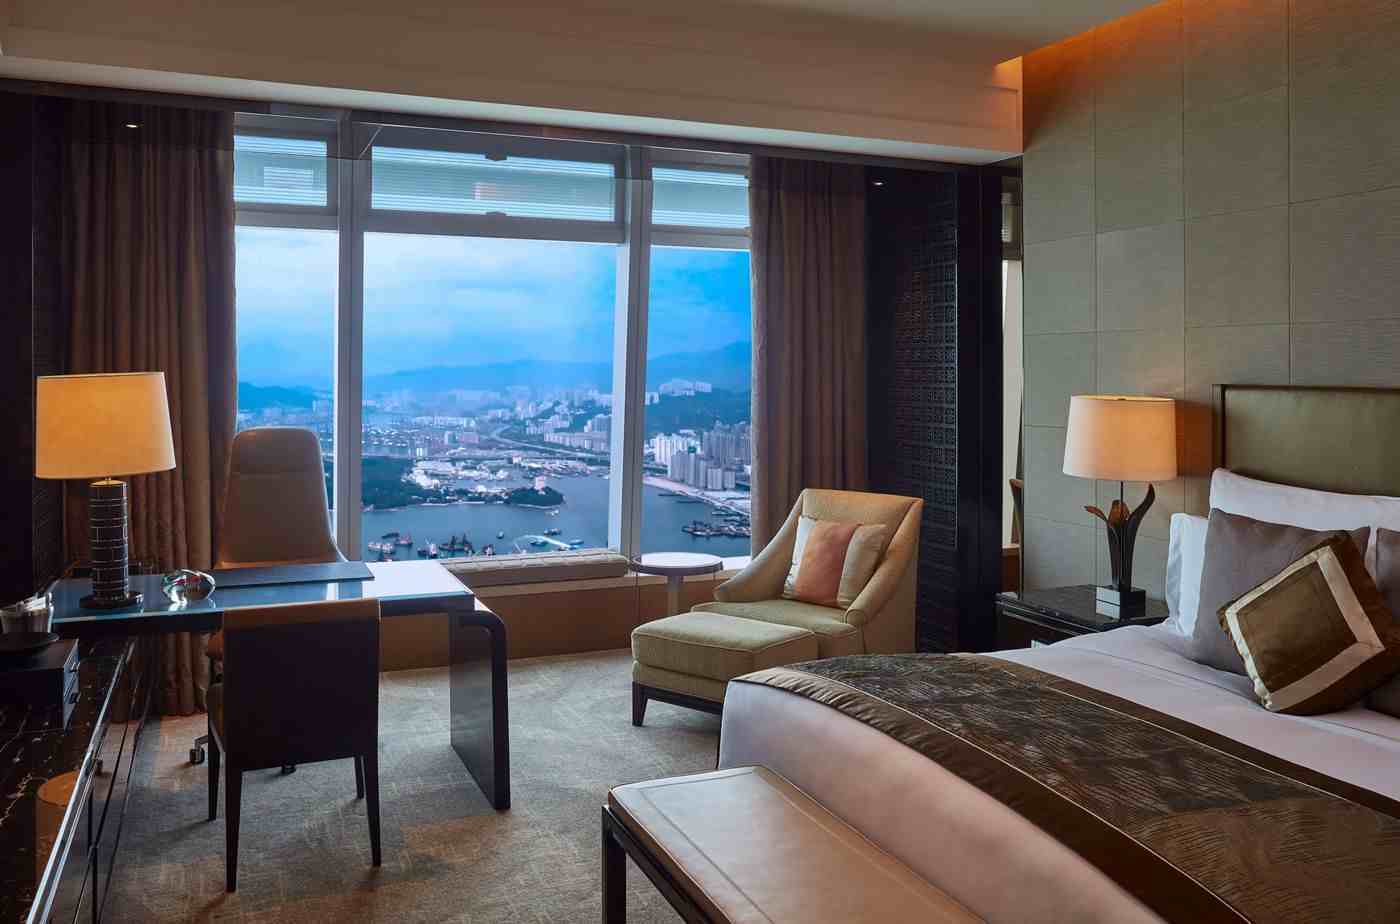 中国最高的酒店|第1-5名